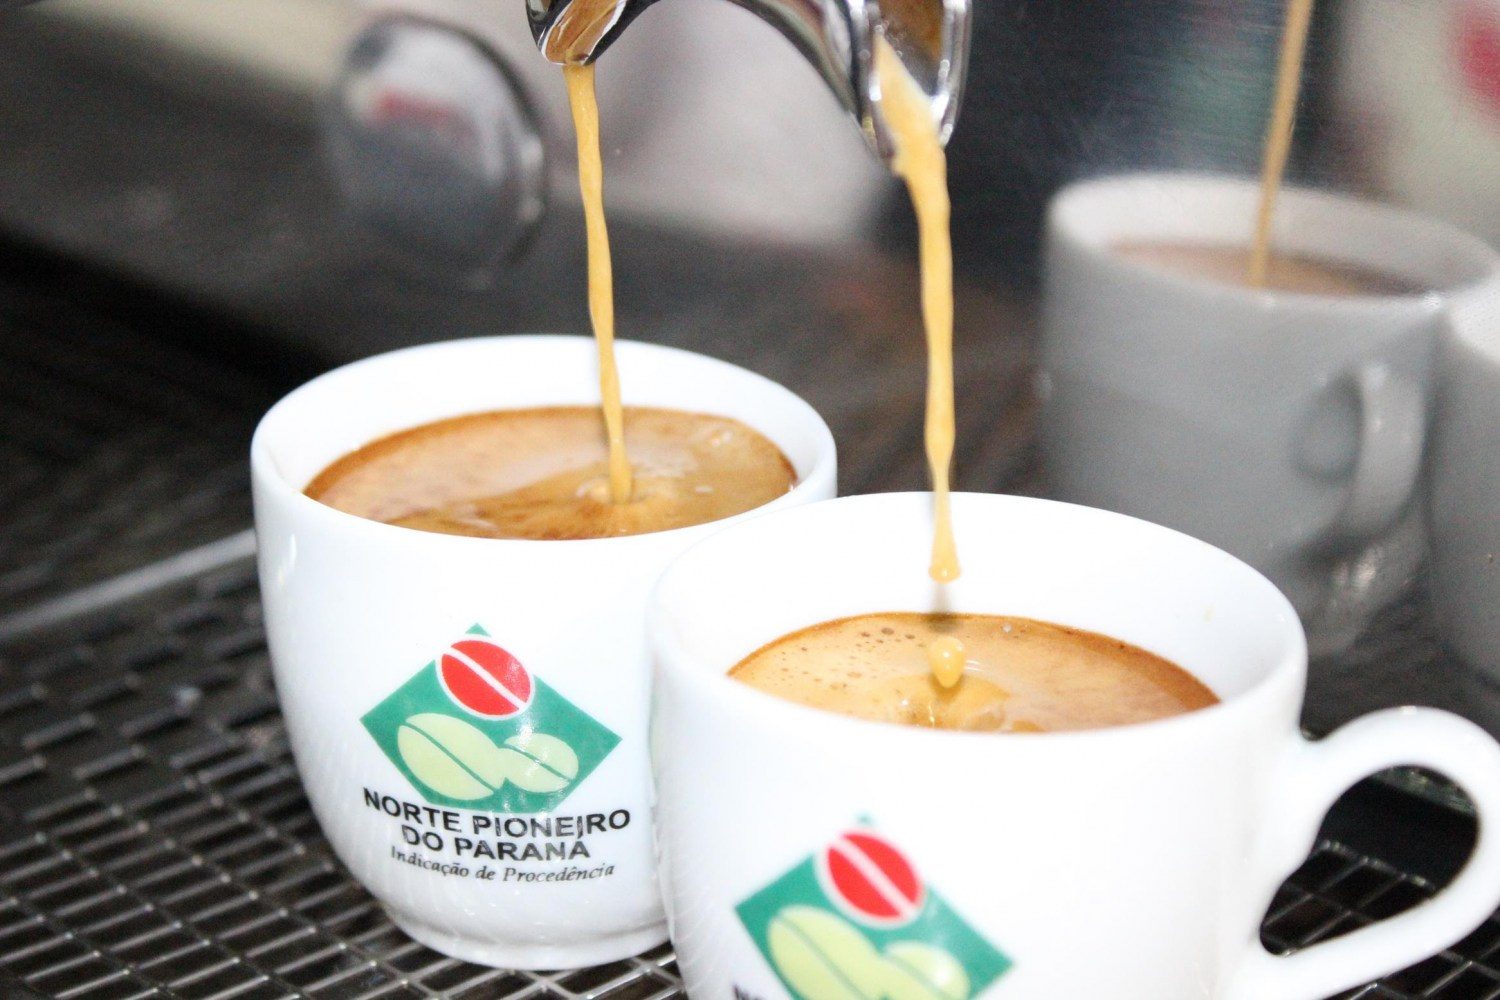 IG trouxe visibilidade nacional e internacional para o café paranaense. 